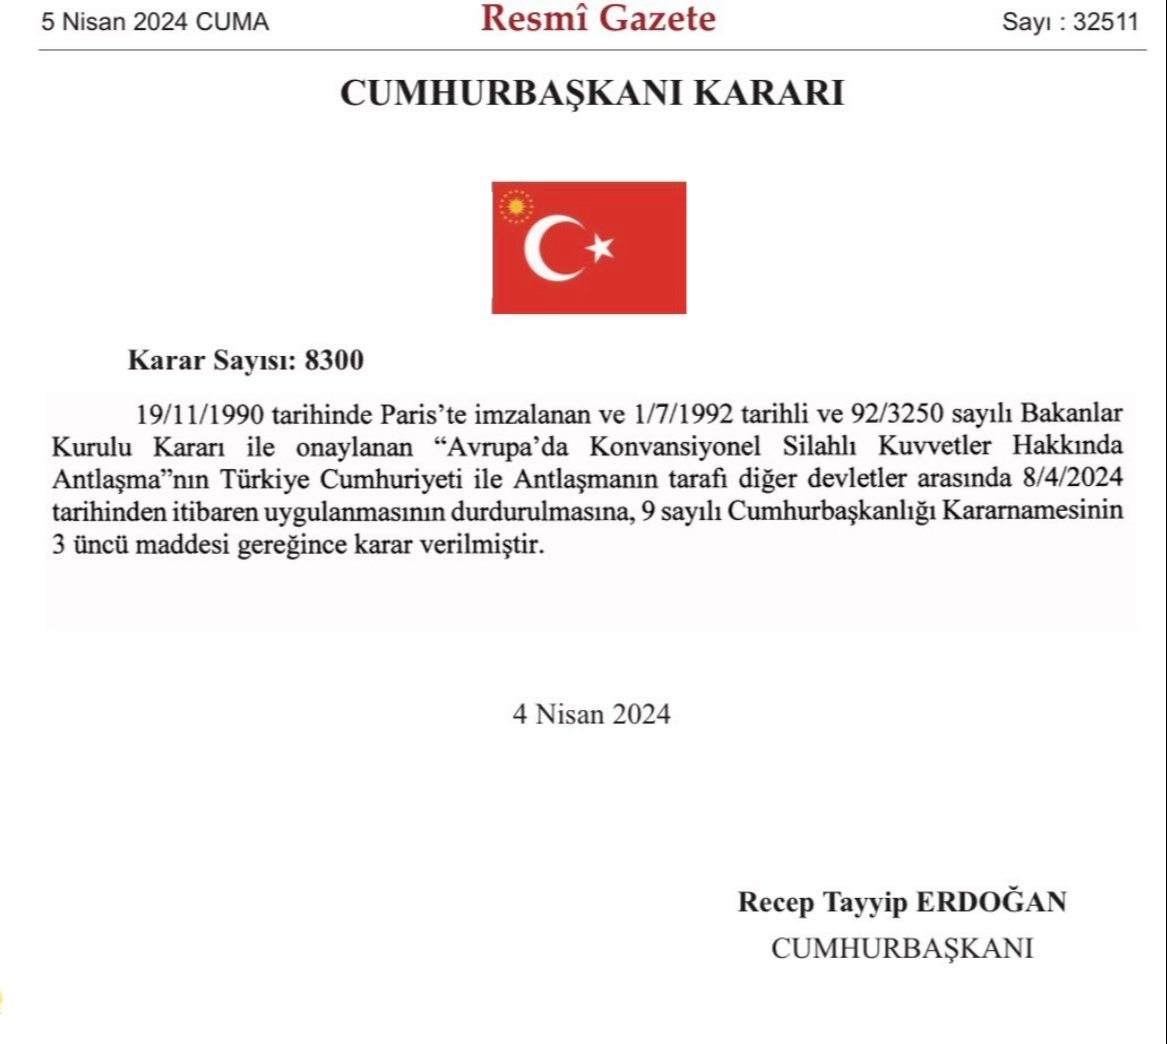 Türkiye, Avrupa'da Konvansiyonel Silahlı Kuvvetler Antlaşması’ndan (AKKA) çekildi